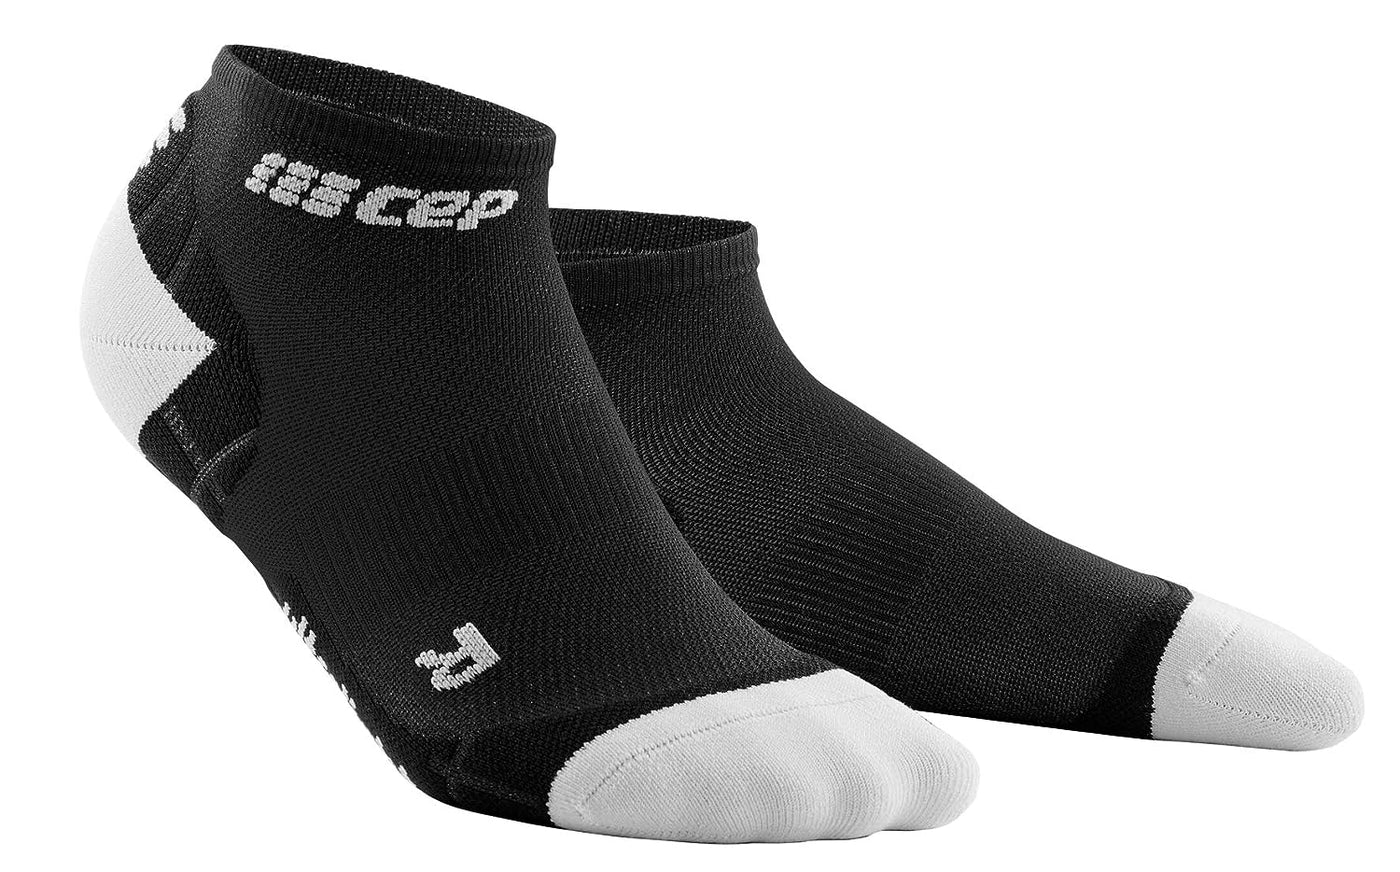 CEP Ultralight Low Cut Women's Cycling Socks (Black/Light Grey)